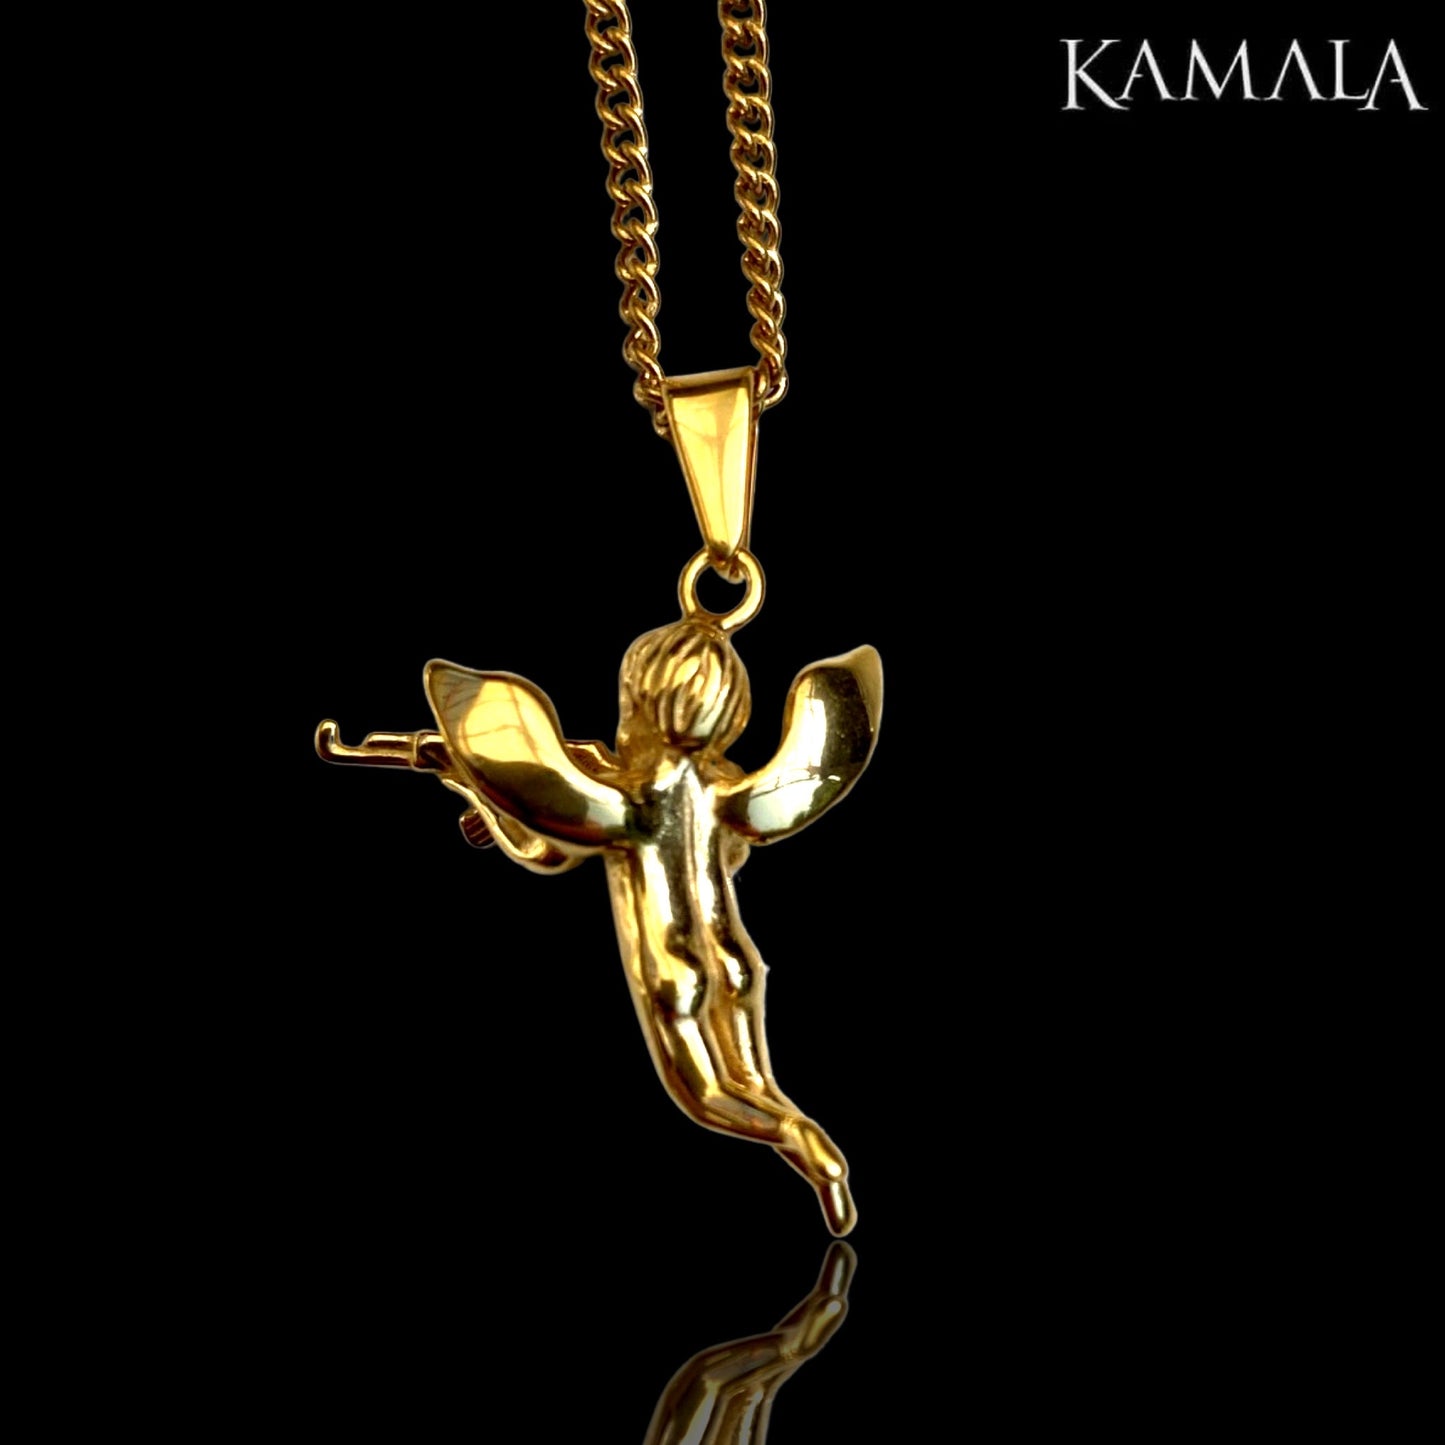 Halskette - Engel mit AK47 - Golden